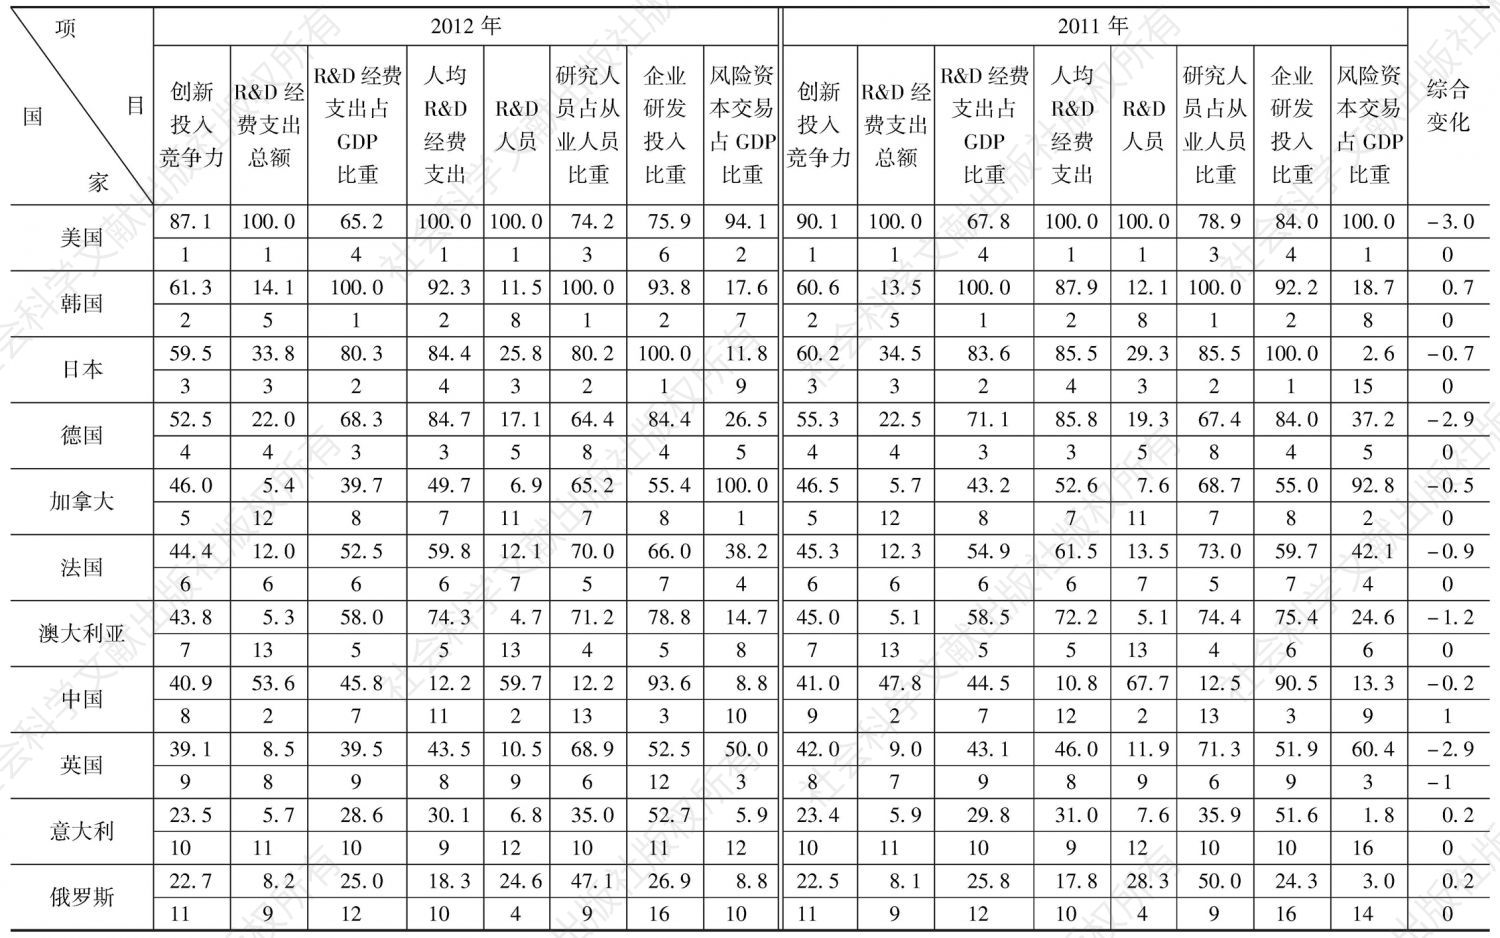 表6-1 2011～2012年G20国家创新投入竞争力评价比较表